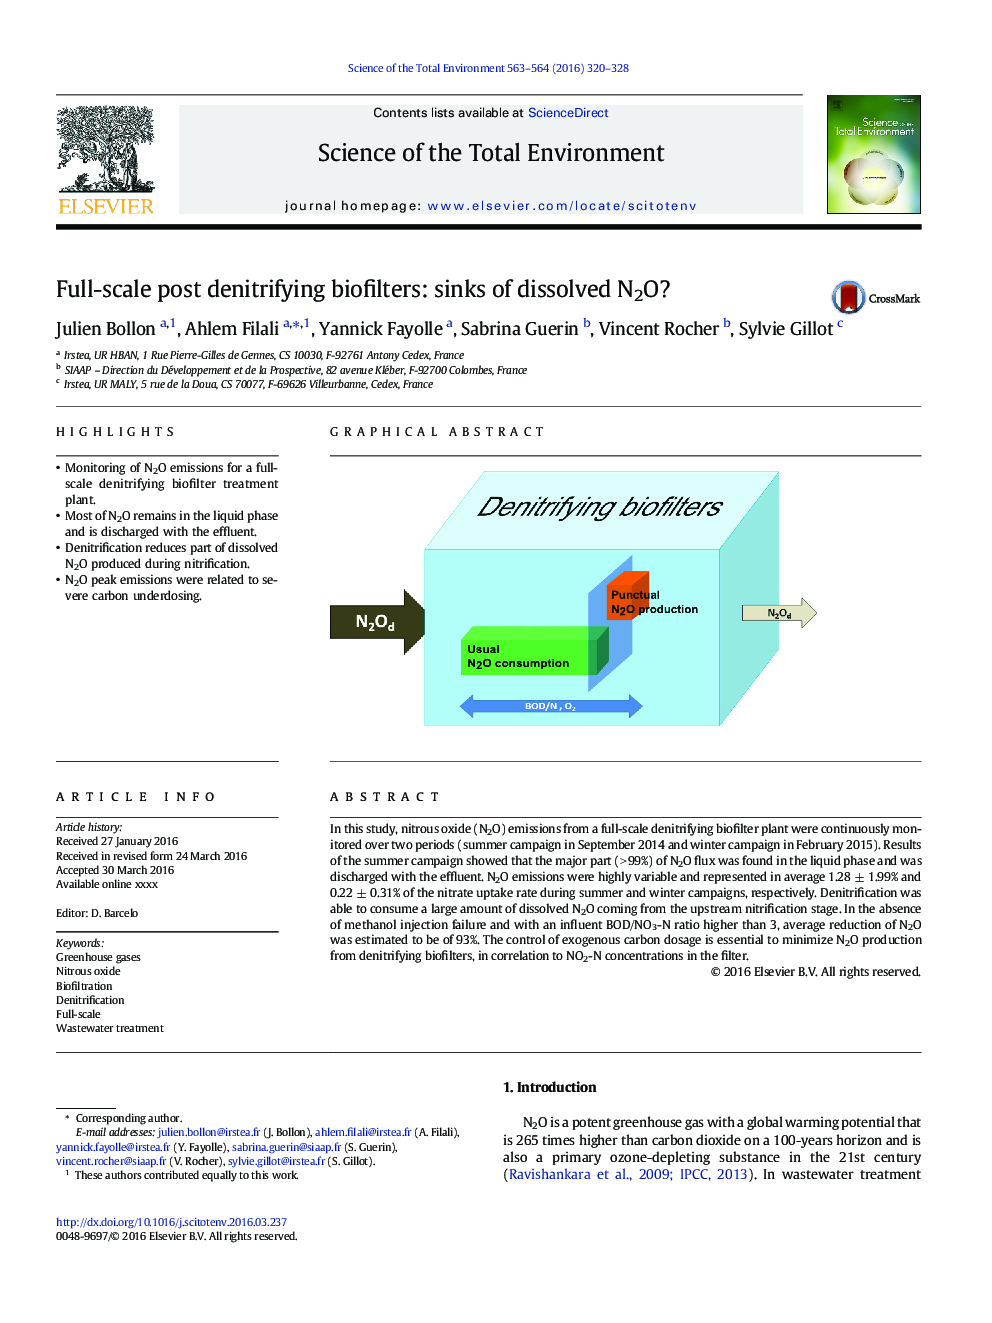 Full-scale post denitrifying biofilters: sinks of dissolved N2O?